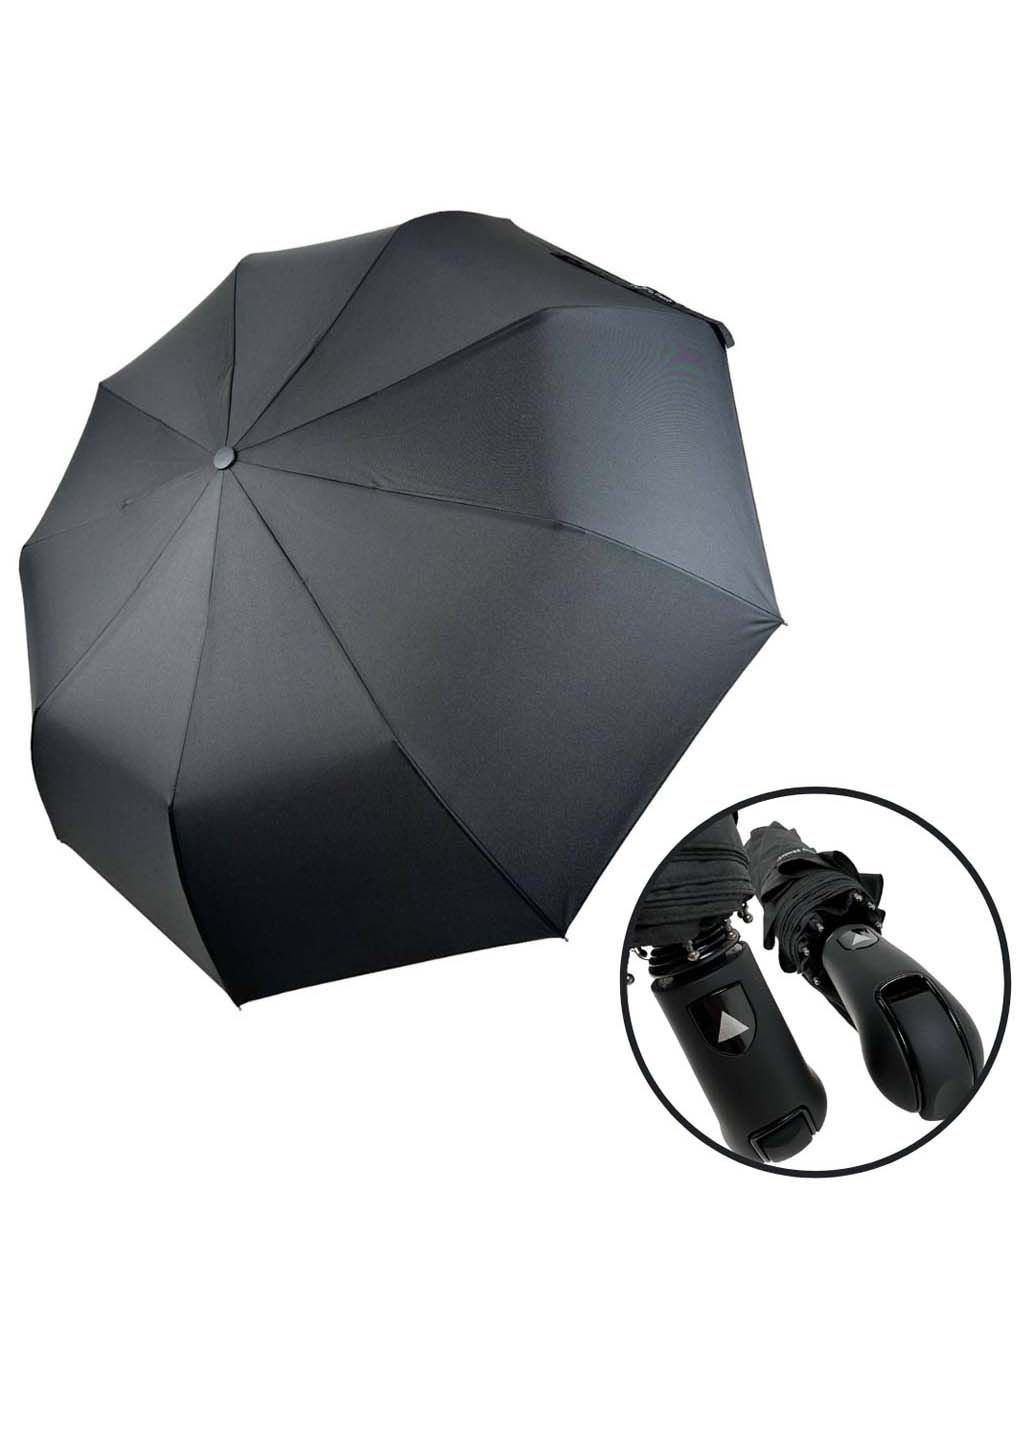 Мужской складной зонт полуавтомат с прямой ручкой Feeling Rain (289977306)